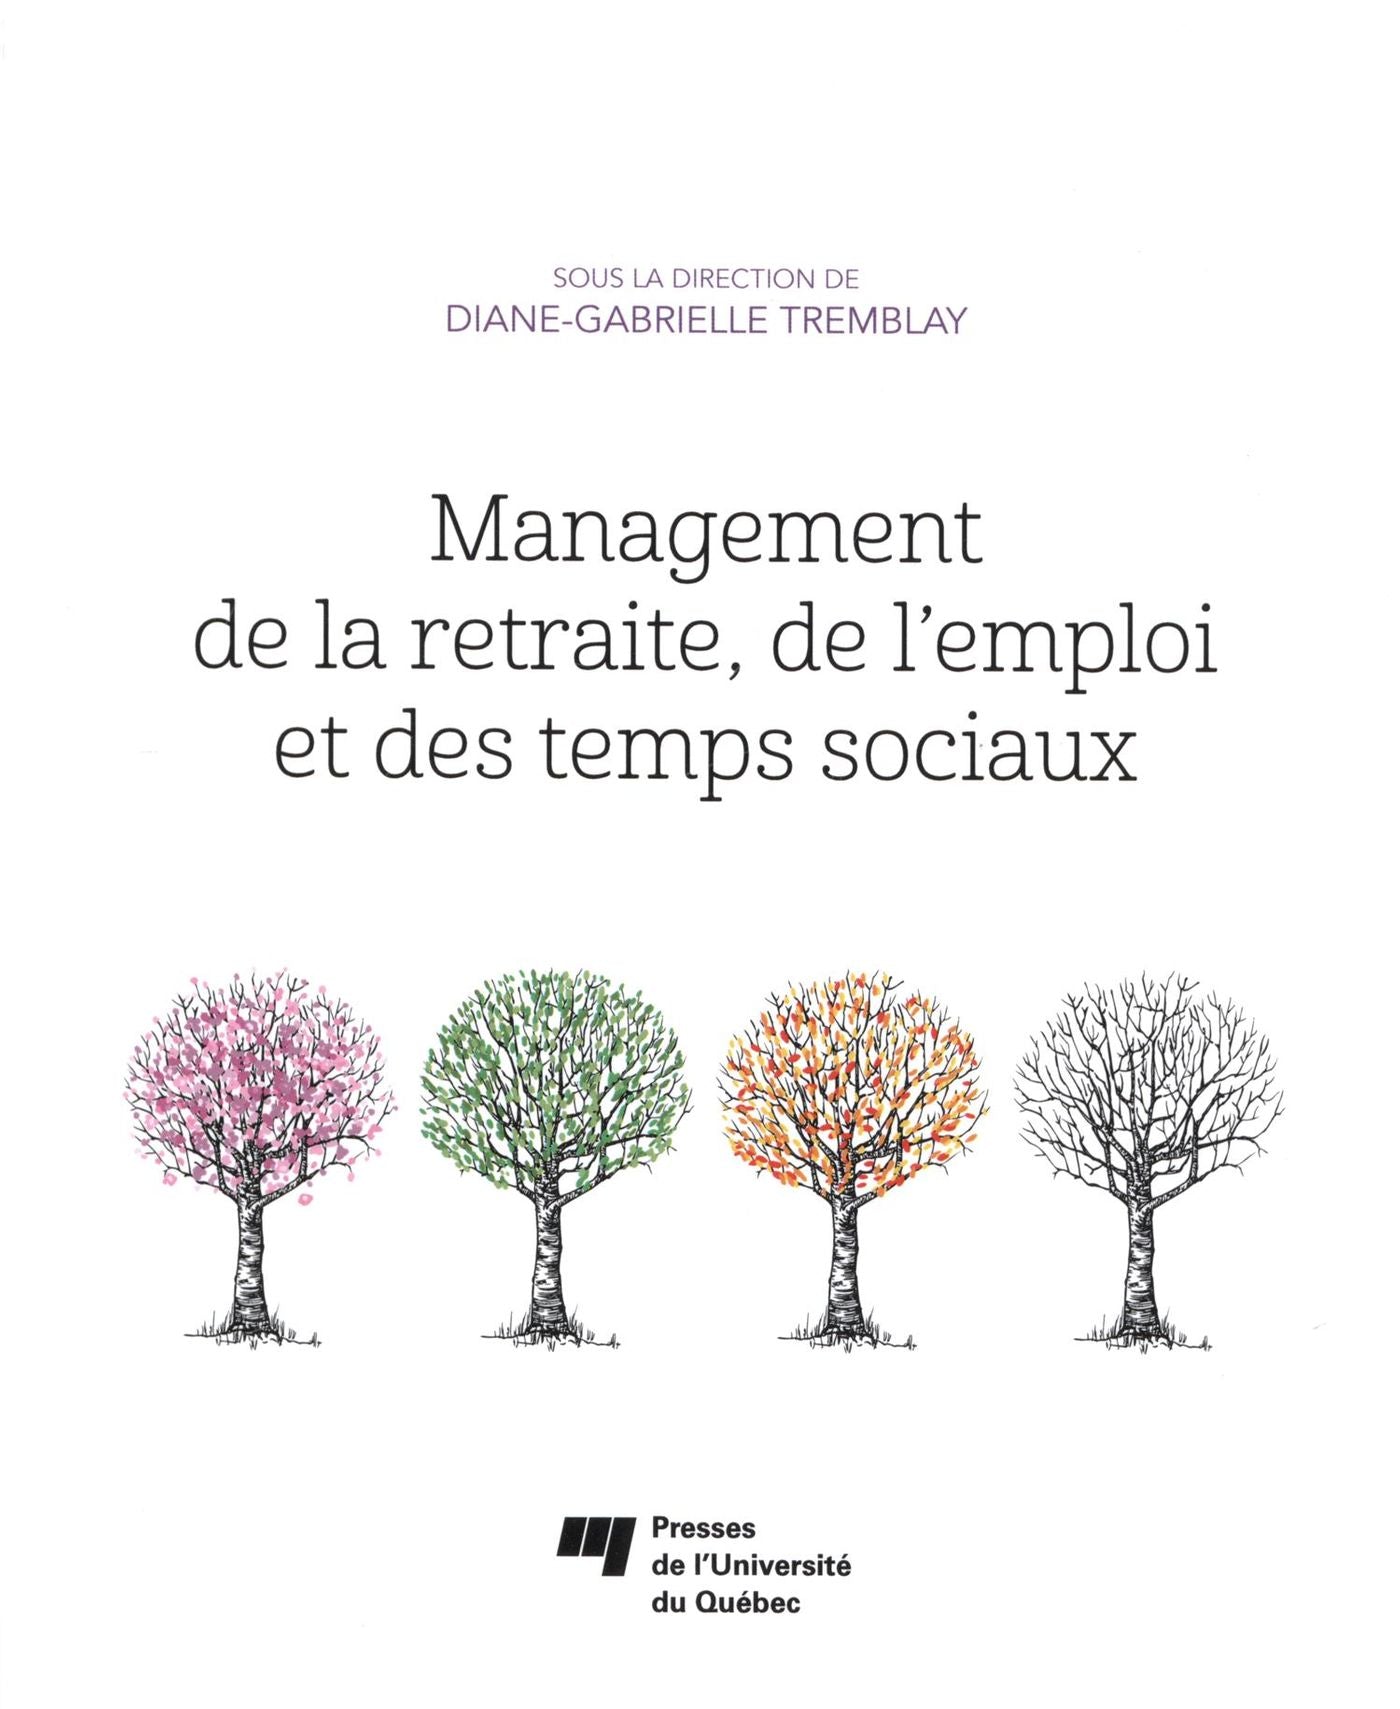 Management de la retraite, de l'emploi et des temps sociaux - Diane-Gabrielle Tremblay